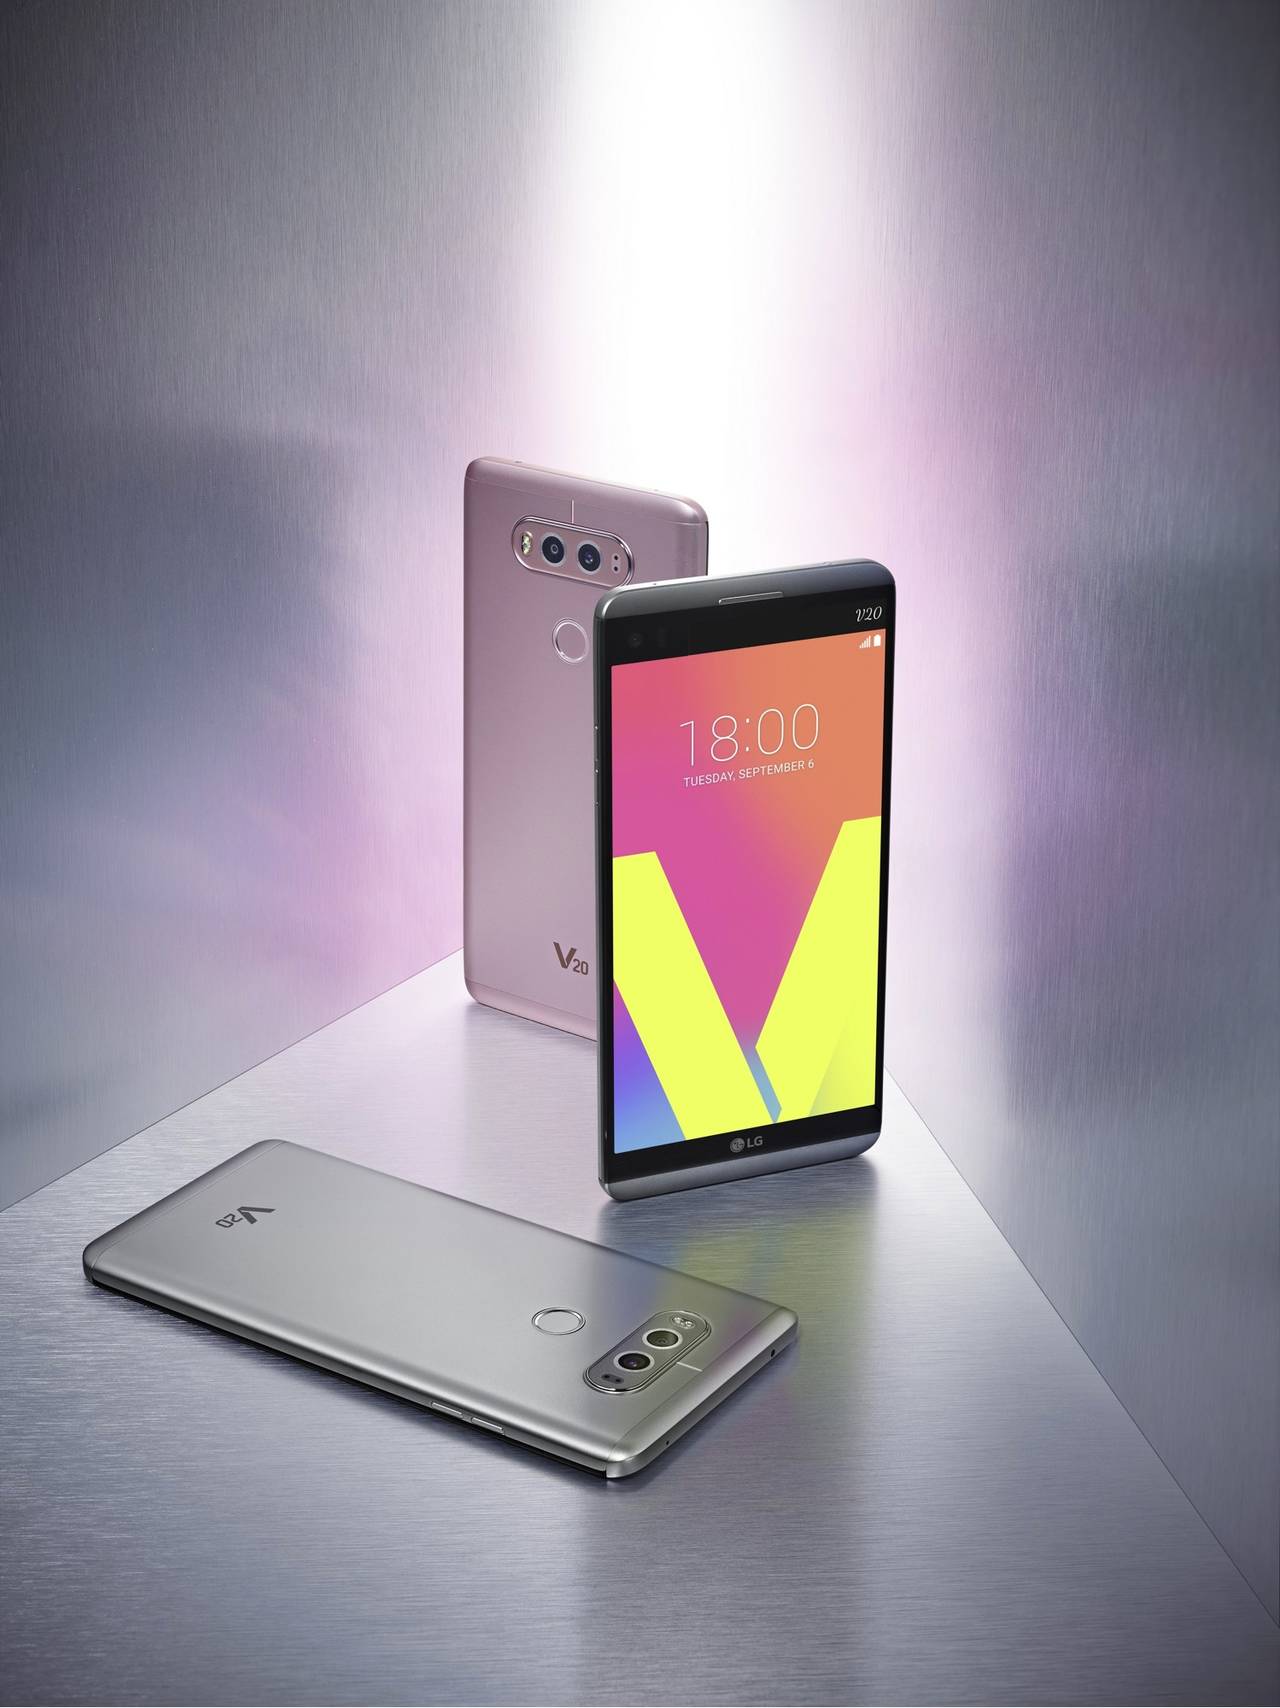 LG confirma lanzamiento del V20